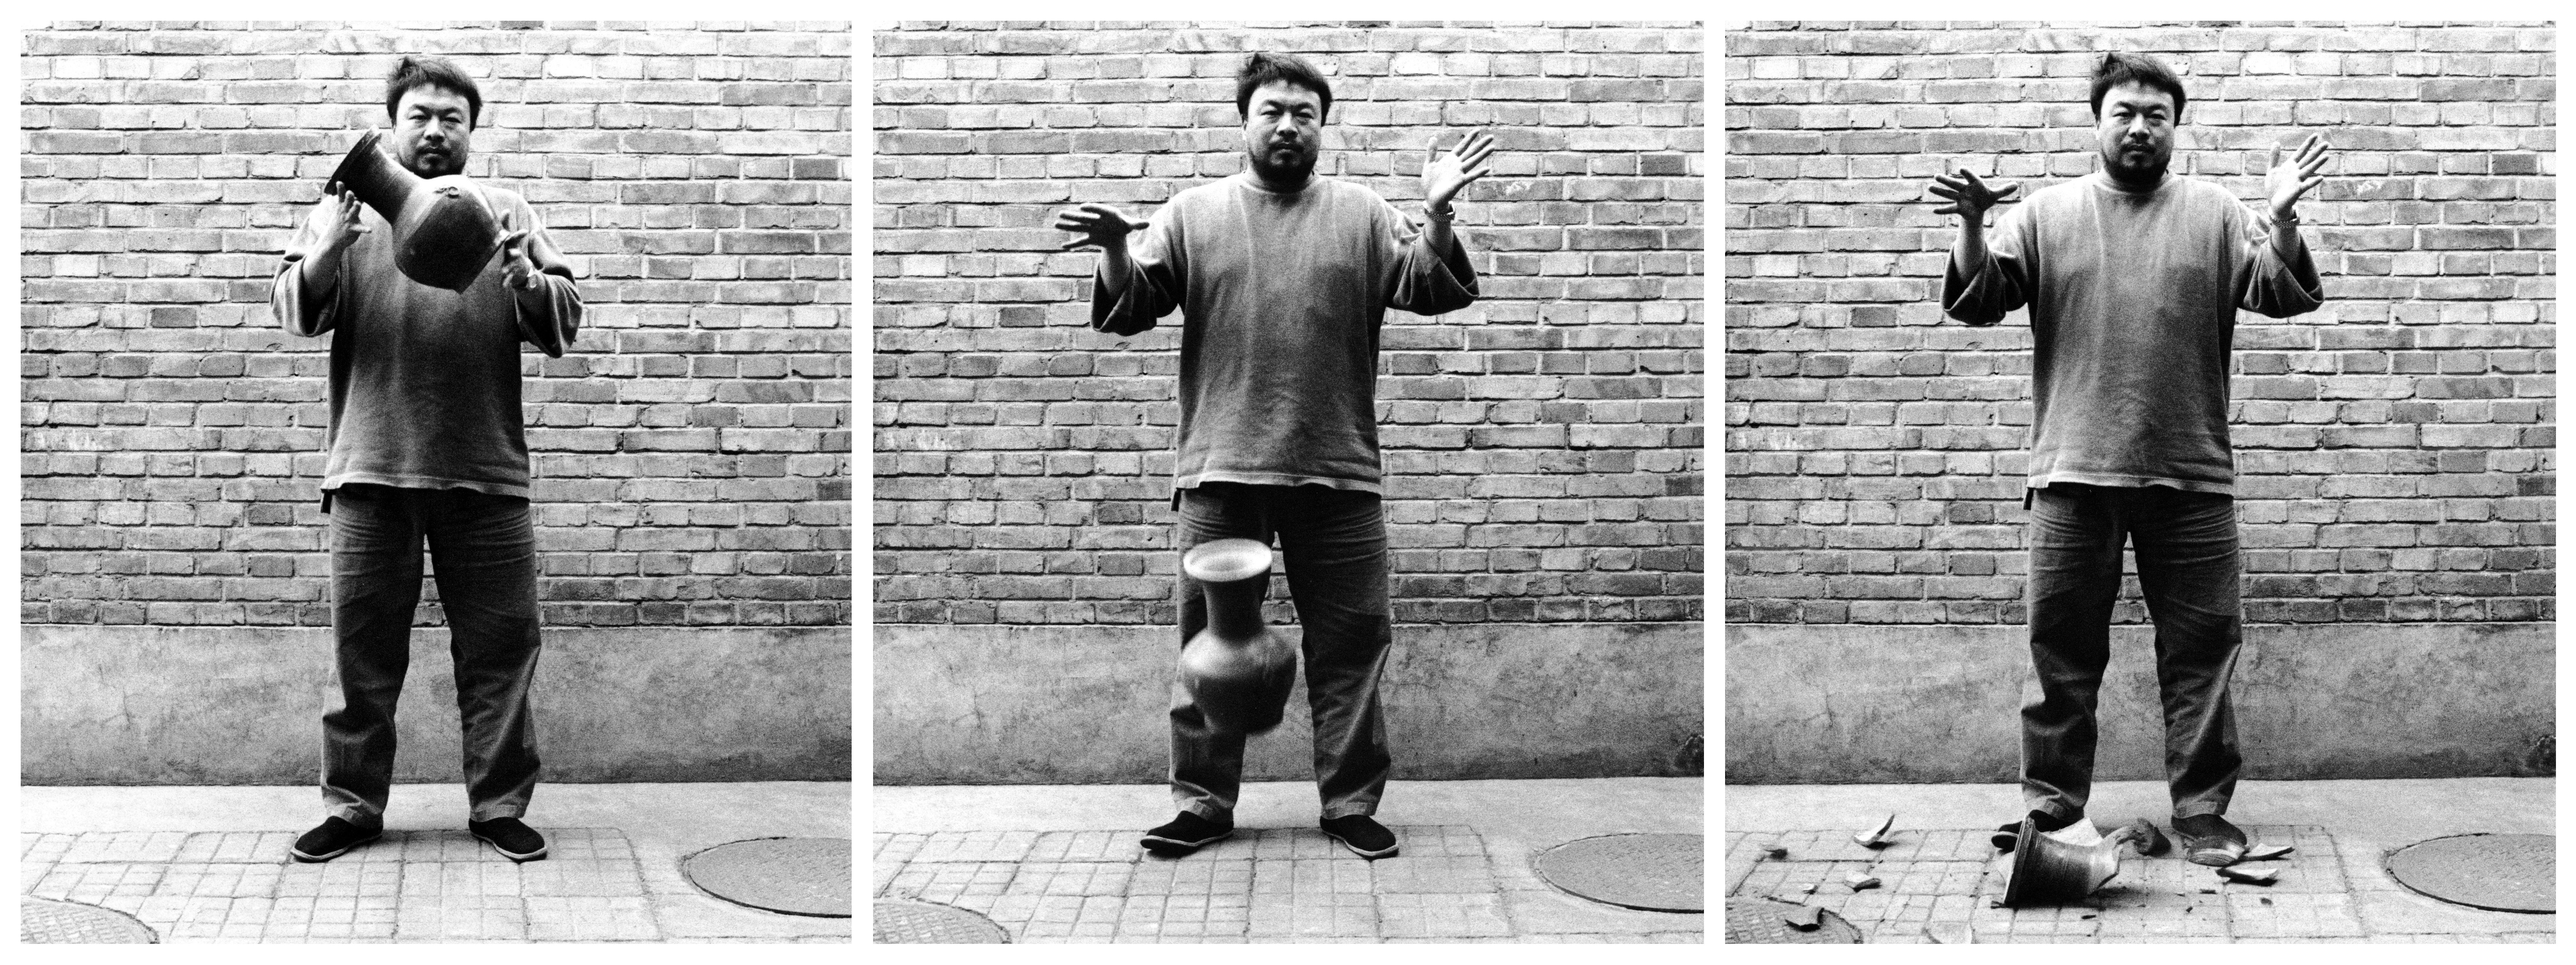 Why did Ai Weiwei break this milliondollar Han Dynasty